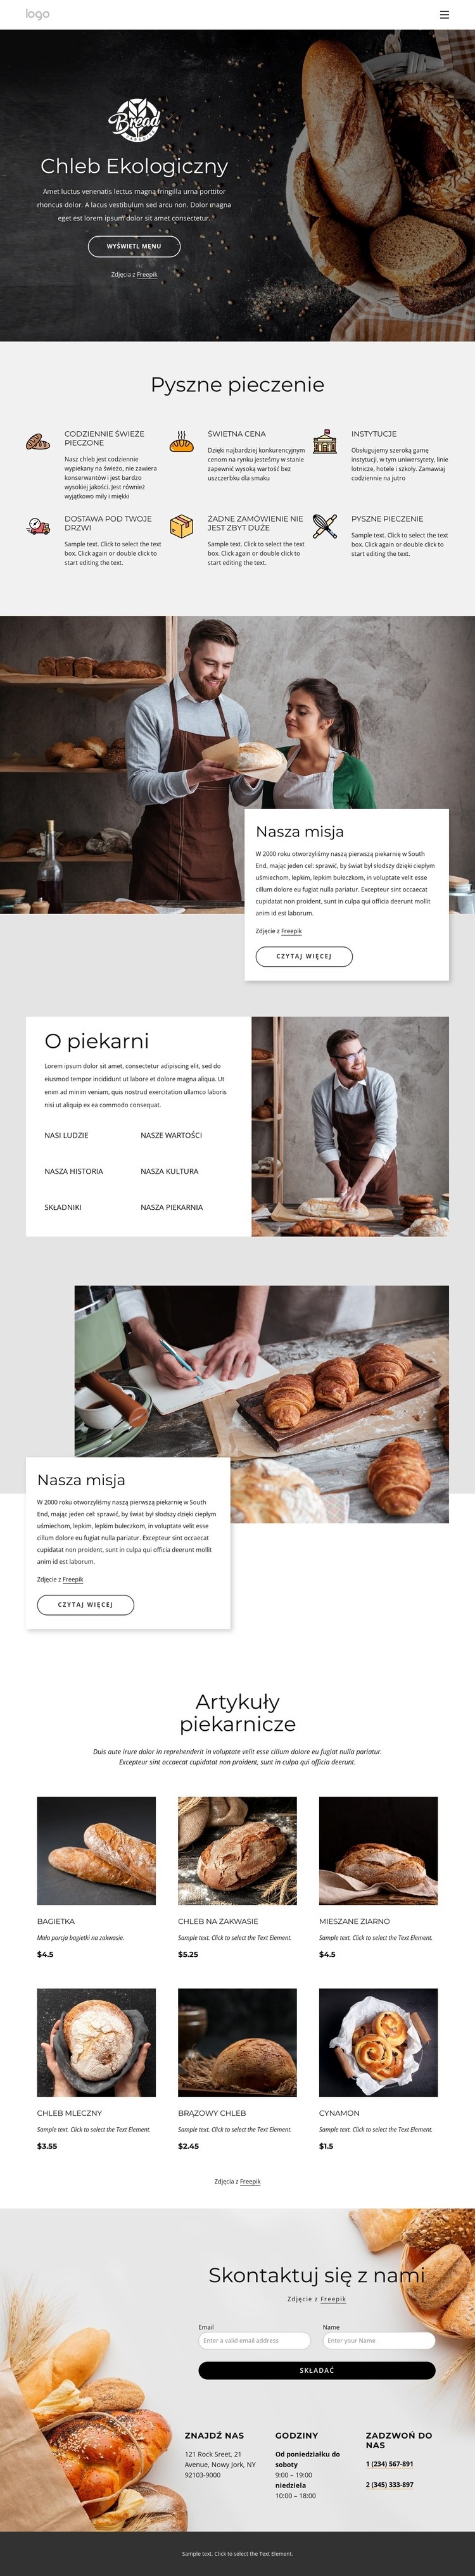 Bajgle, bułki, bułki, herbatniki i bochenki chleba Projekt strony internetowej